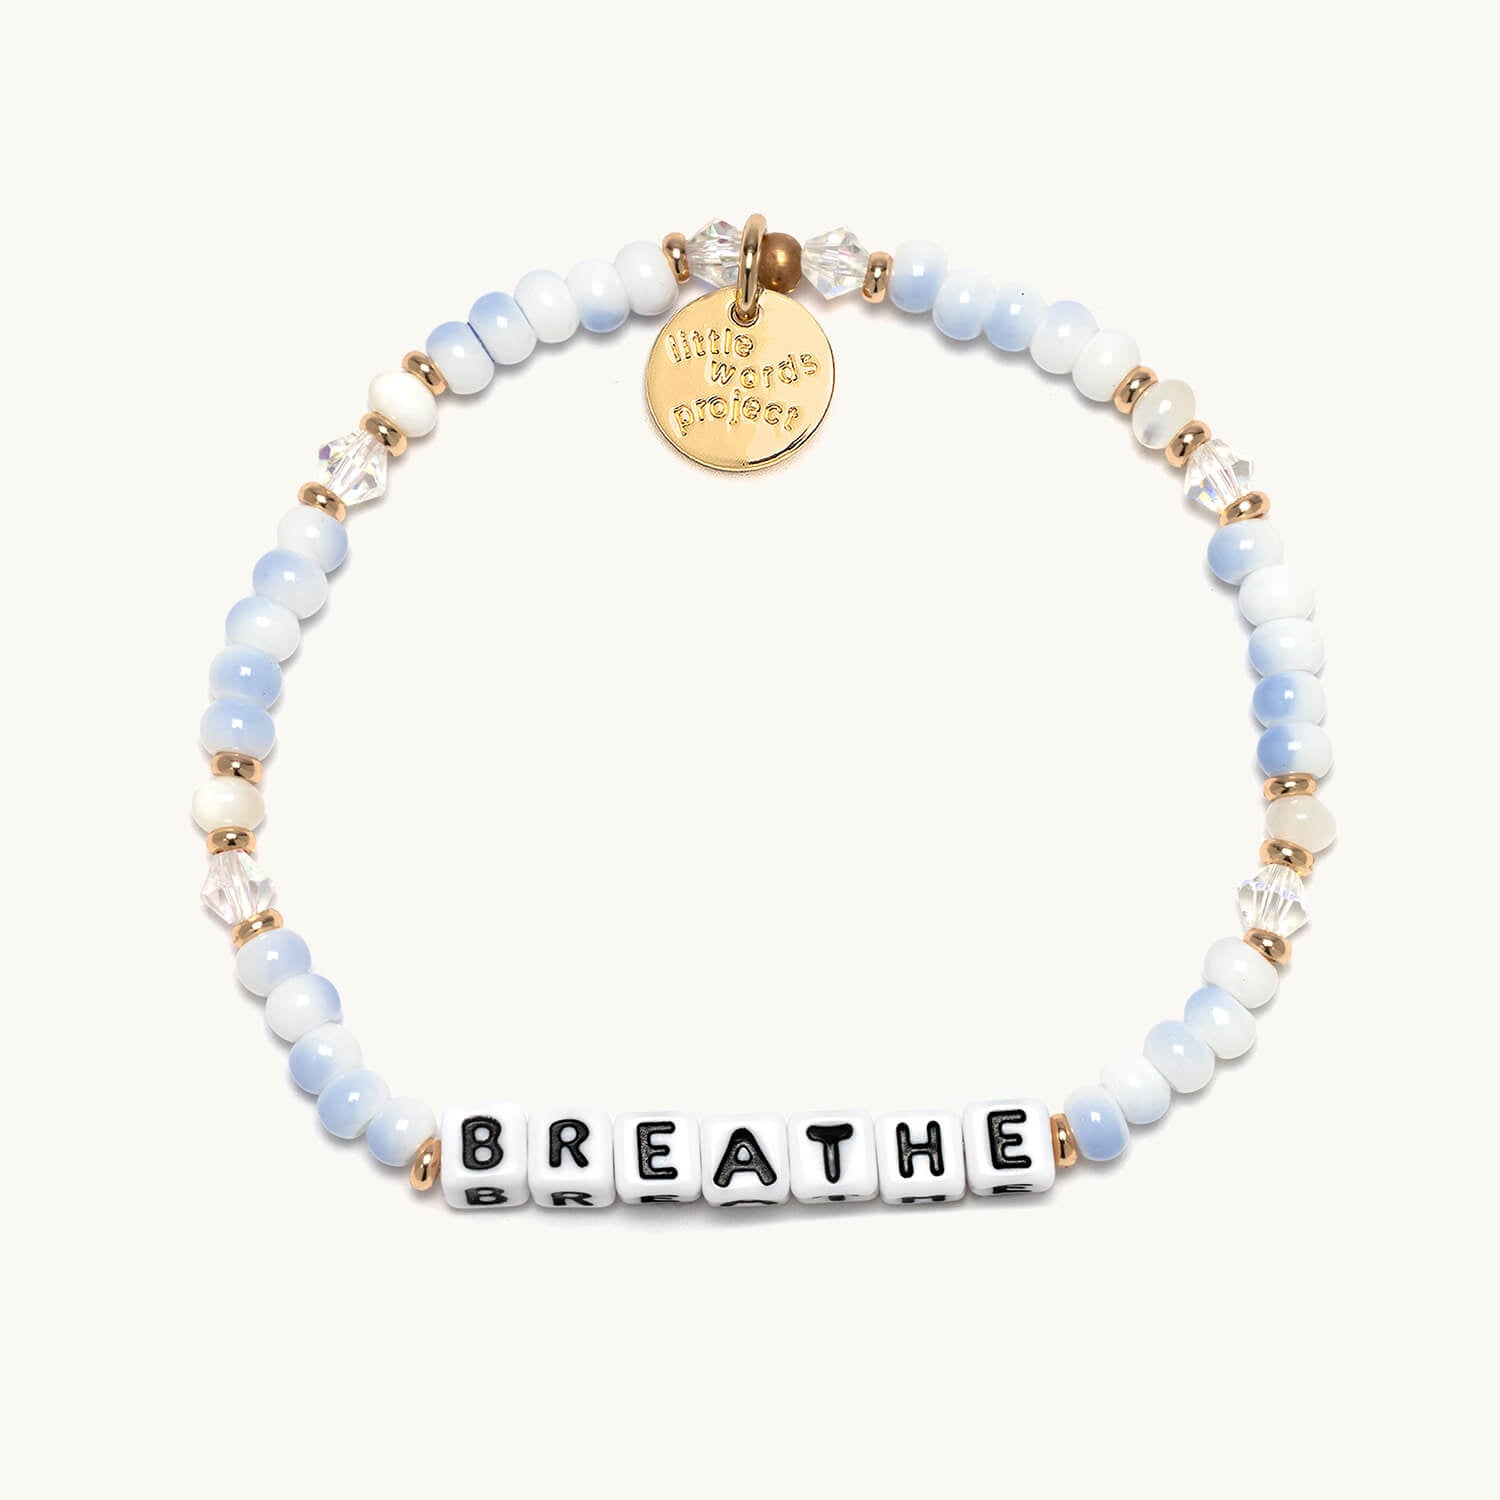 Breathe- Little Words Project Bracelet 